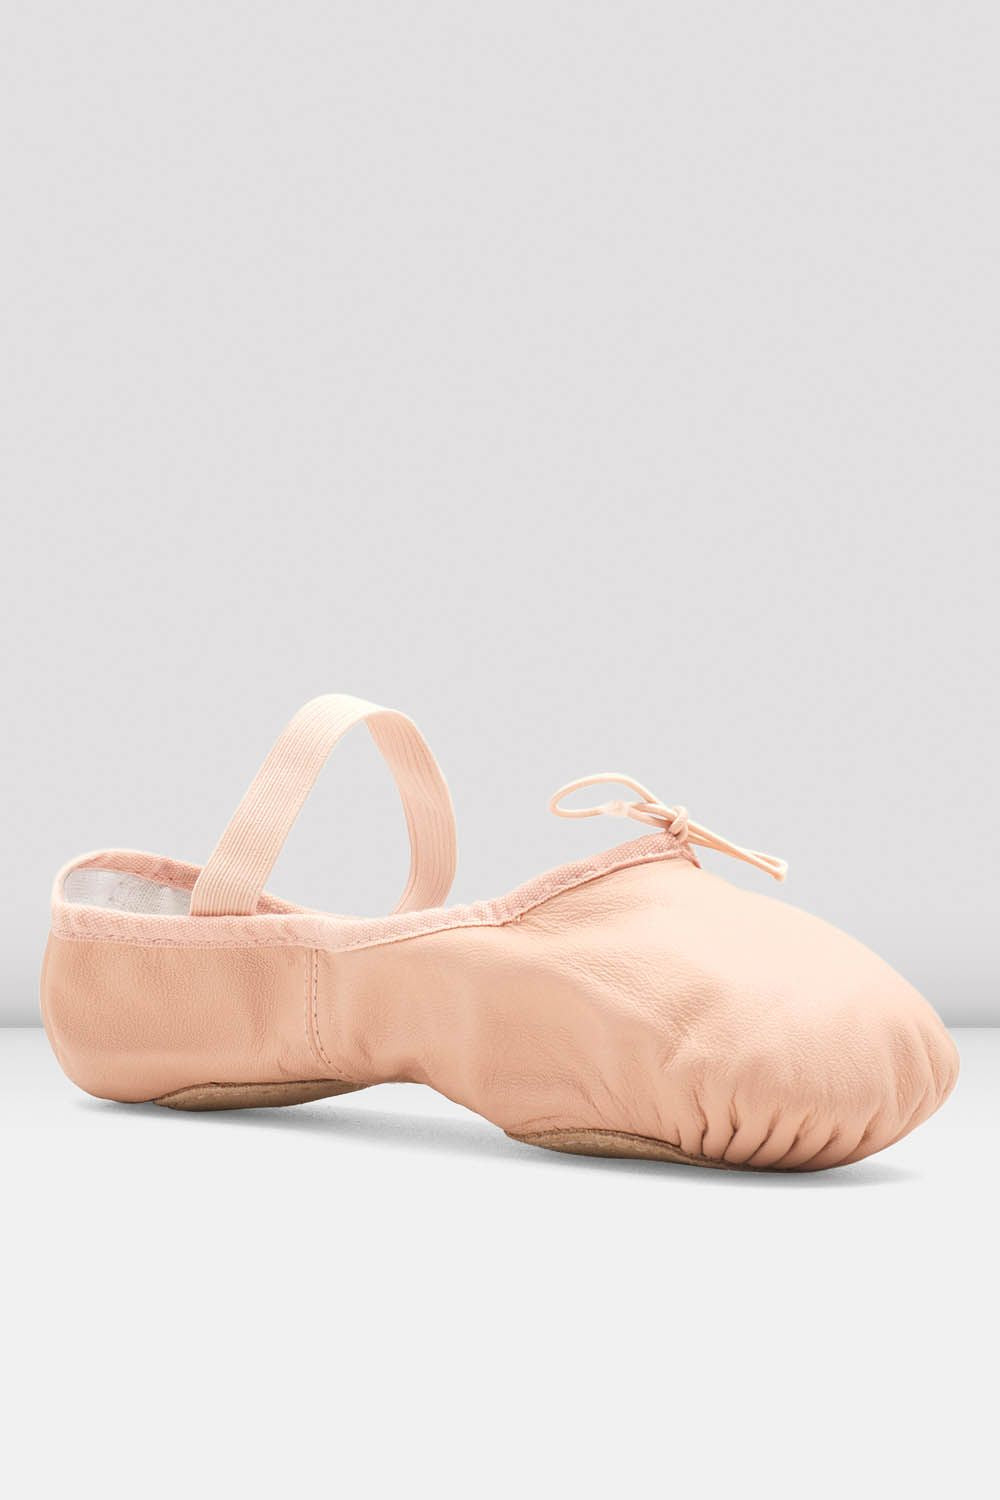 Ladies Dansoft ll Split Sole Ballet Shoes, Pink – BLOCH Dance US